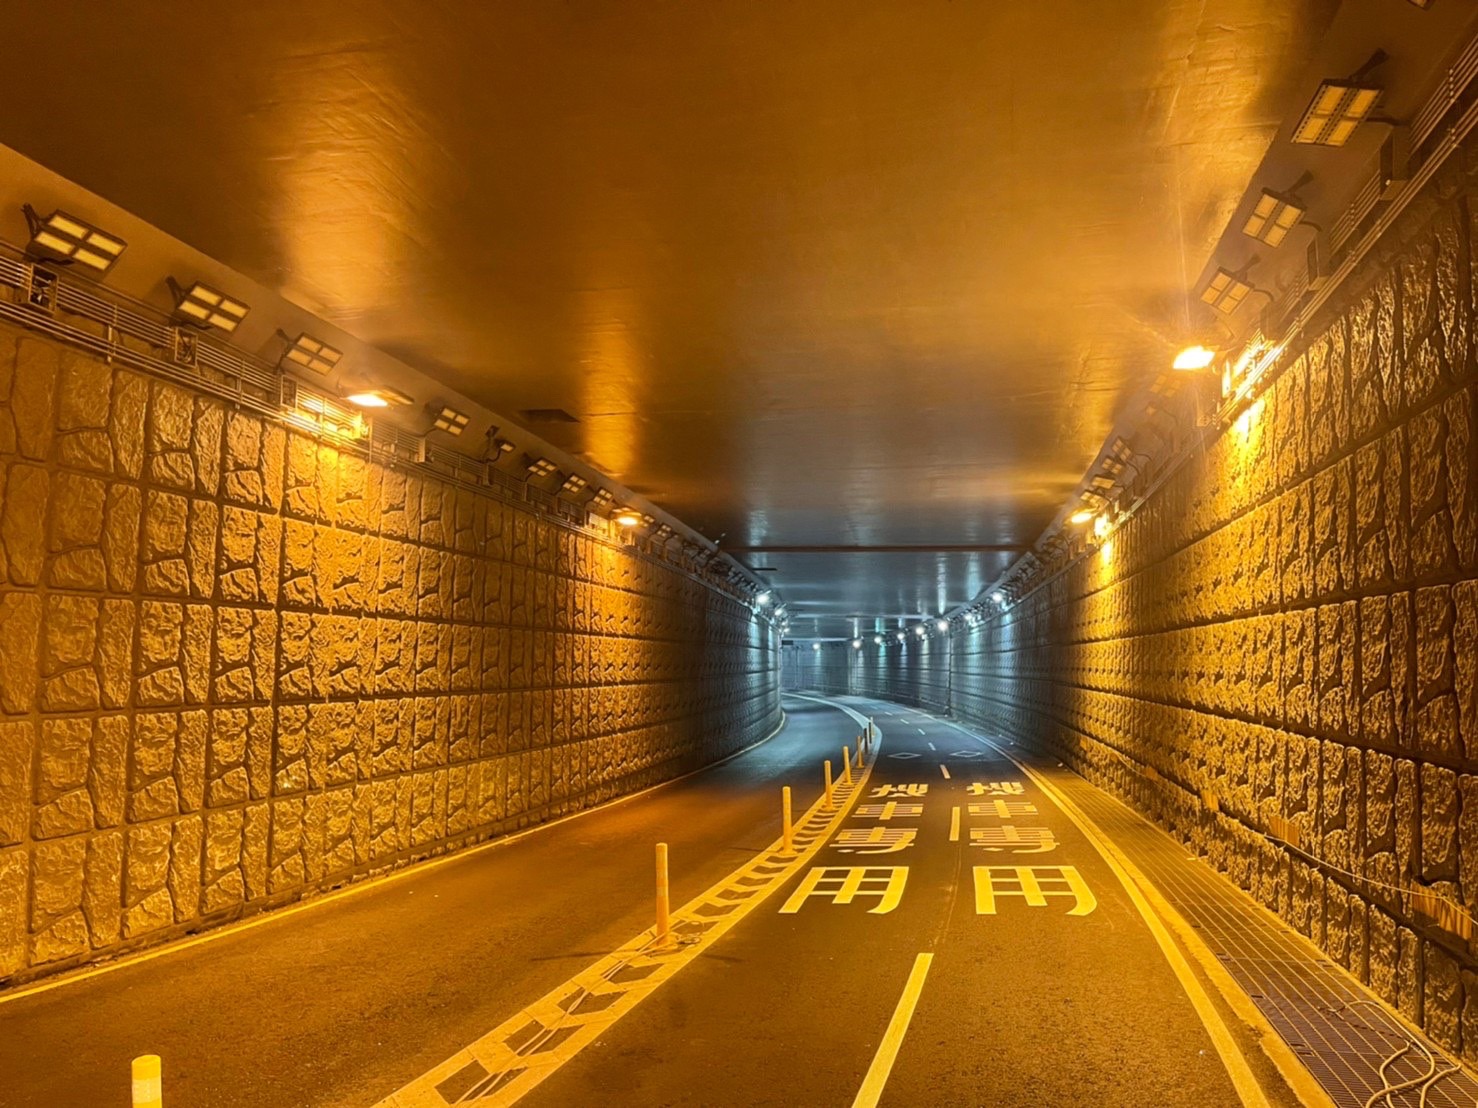 中和區新北環快穿越秀朗橋車行地下道照明改善前照片